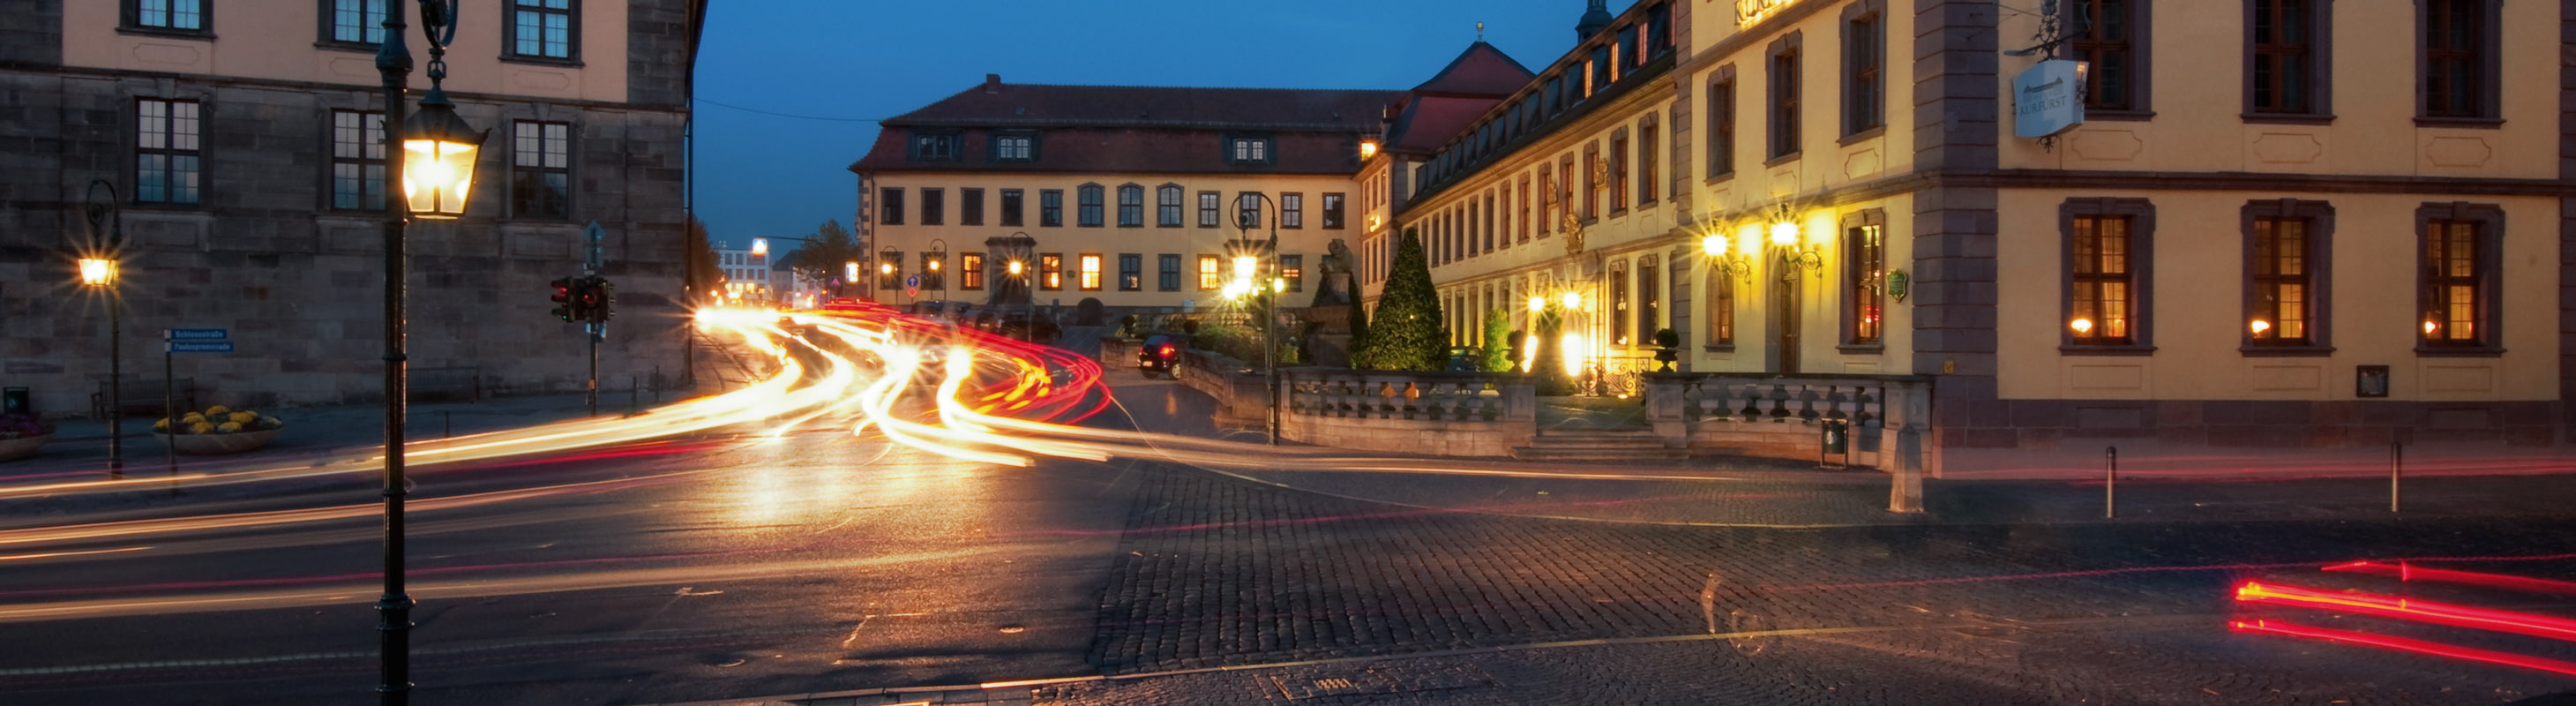 Abendveranstaltungen - Tourismus Fulda